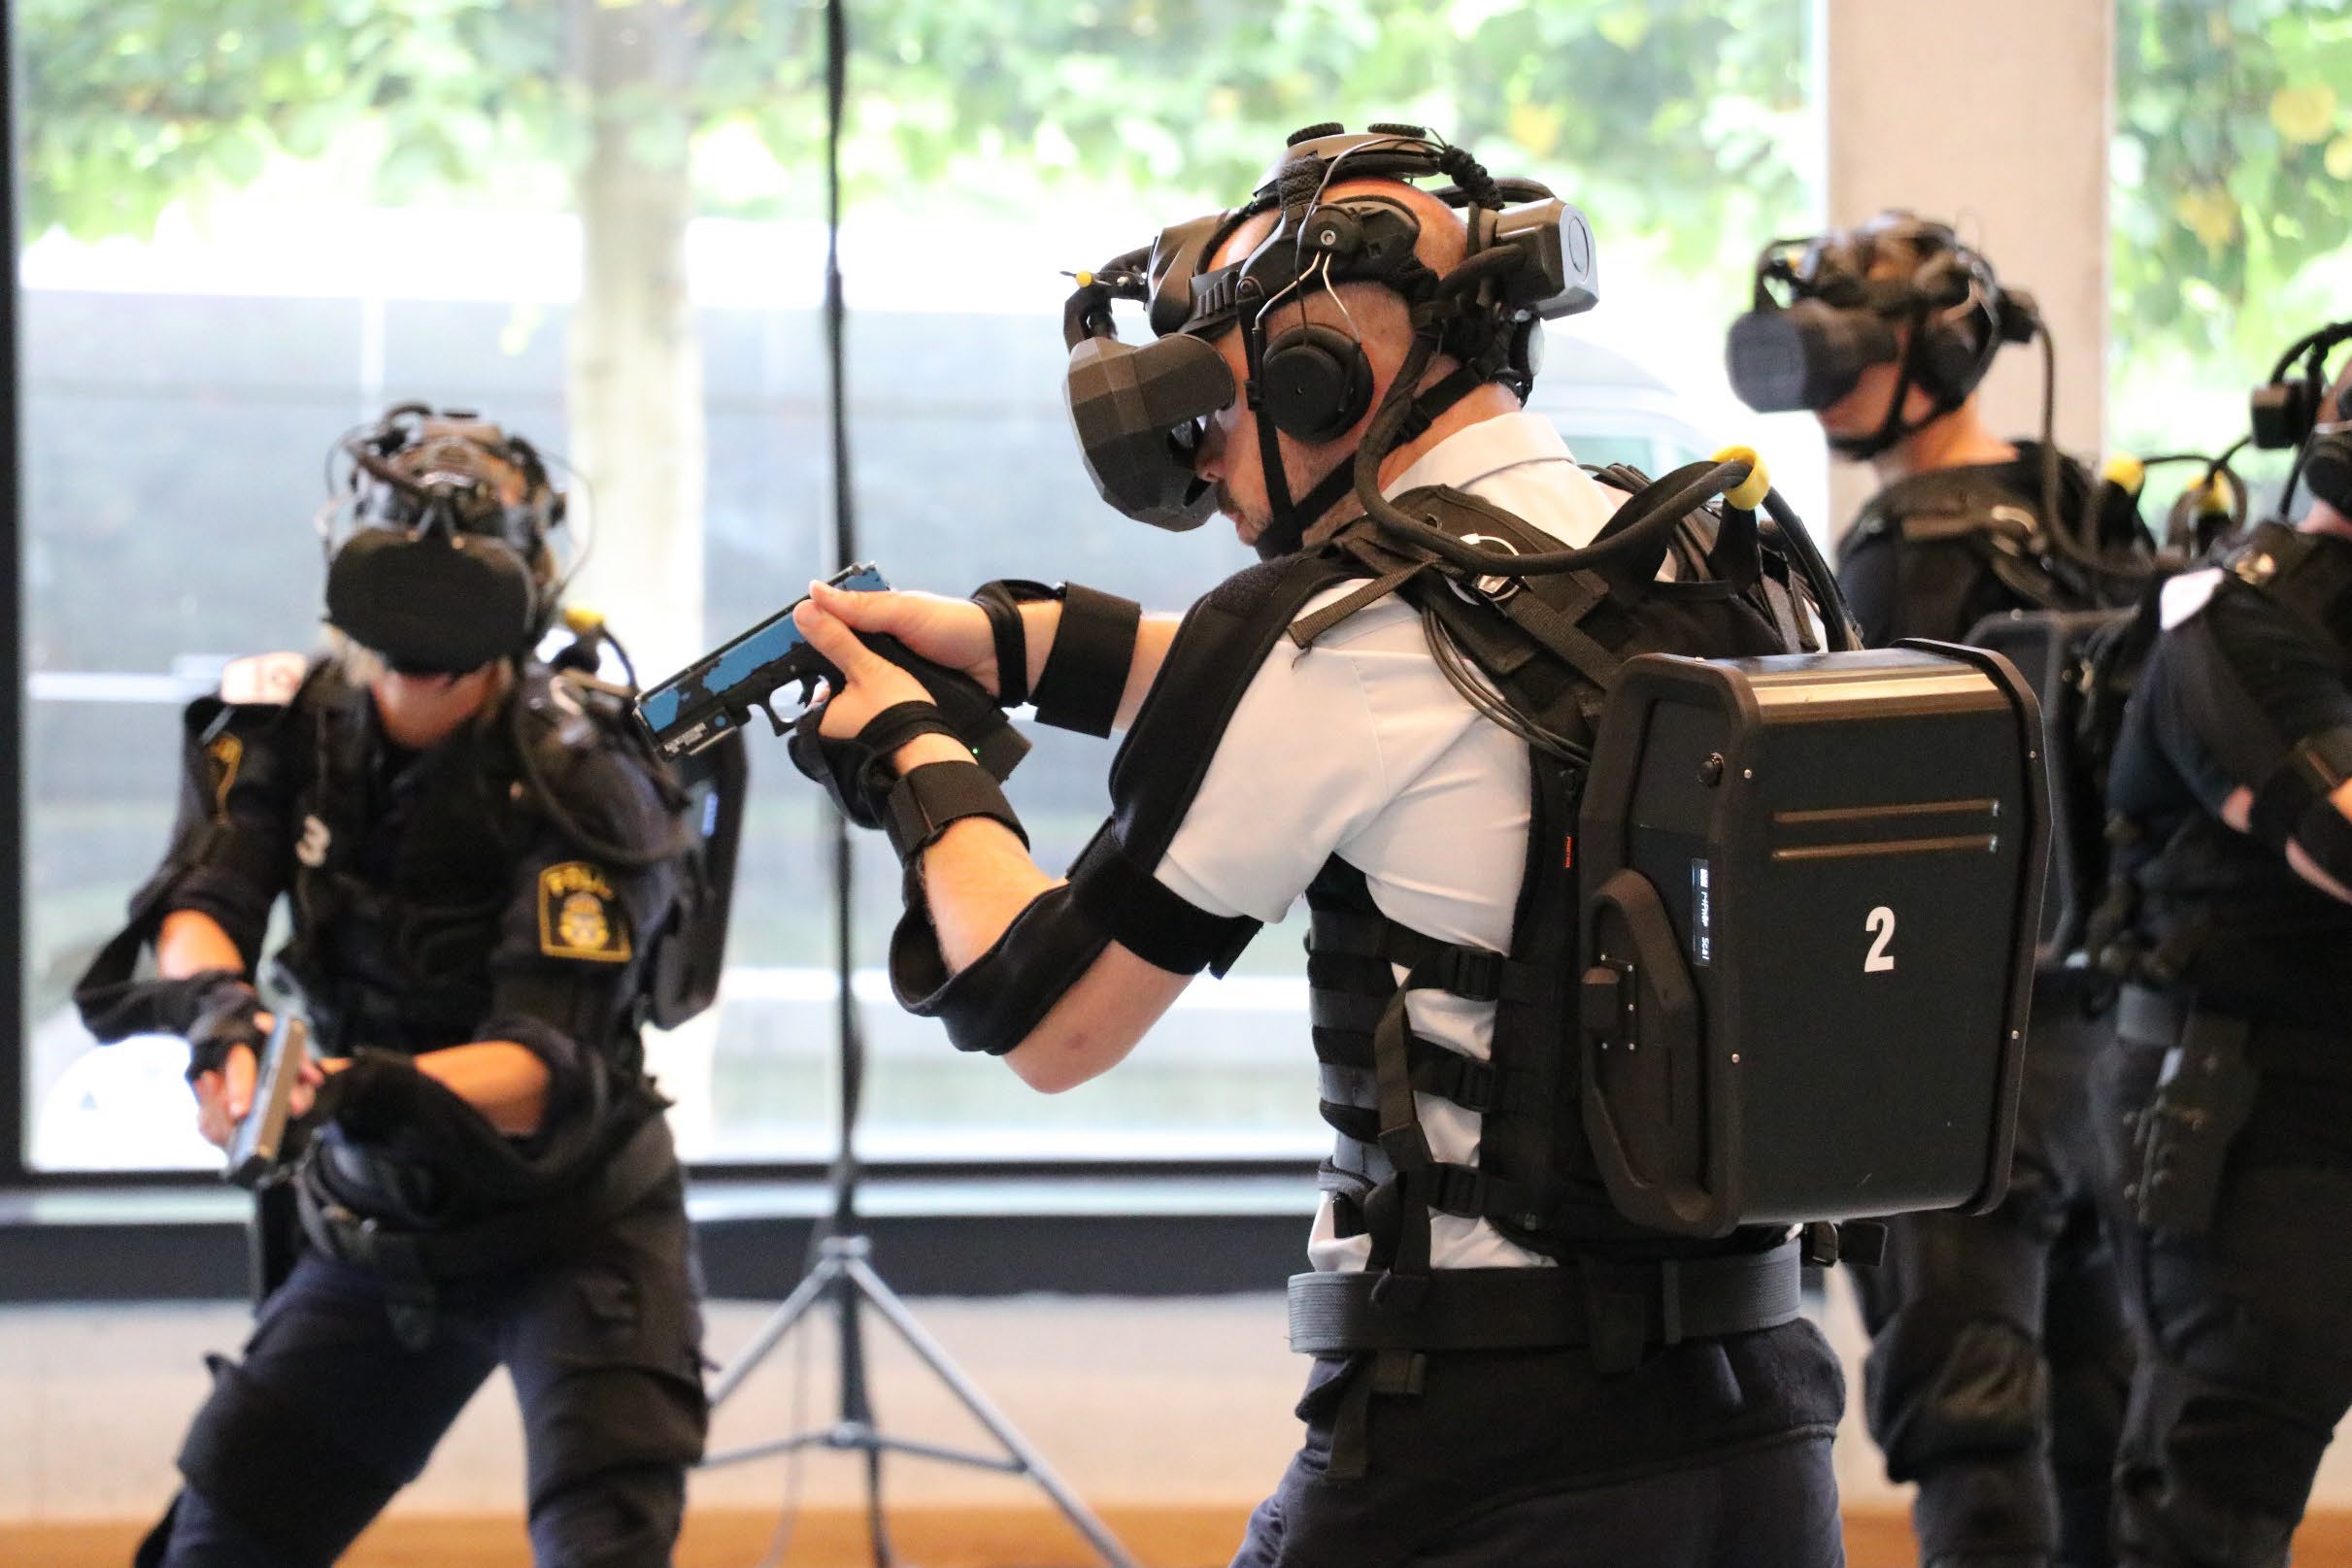 Trainierende mussten zusätzlich zum VR-Brillen-Headset eine Weste und als Rucksack einen Computer sowie etliche mit dem Computer verkabelte Tracking-Sensoren für Arme und Beine anlegen.